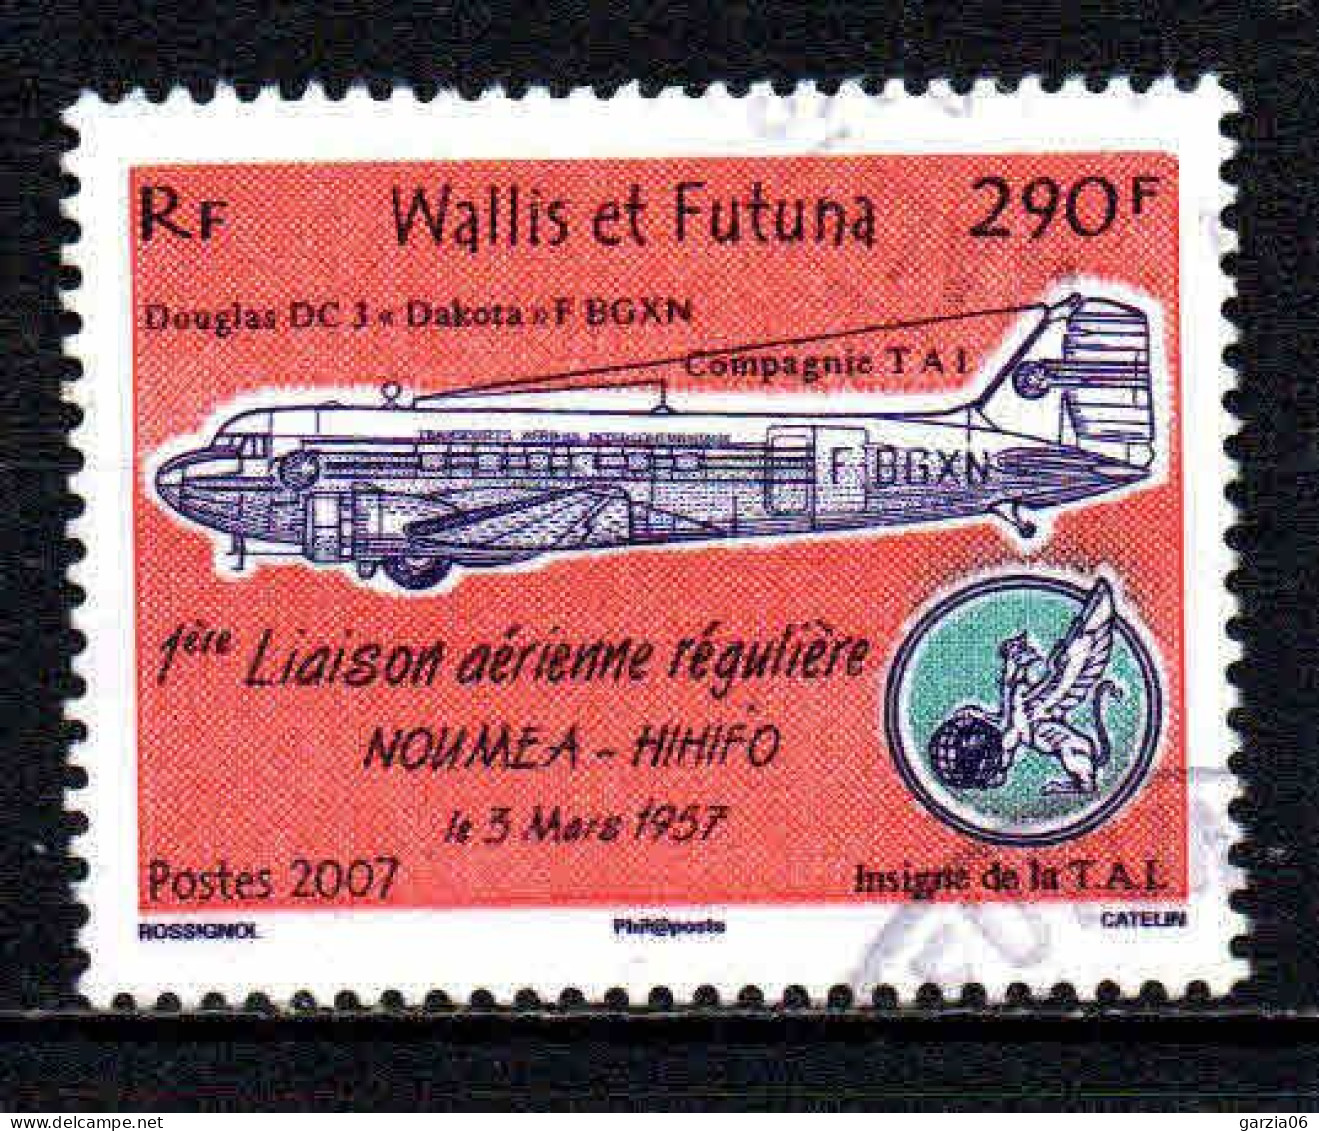 Wallis Et Futuna - 2007  - Liaison Aérienne- N° 676  - Oblit - Used - Oblitérés